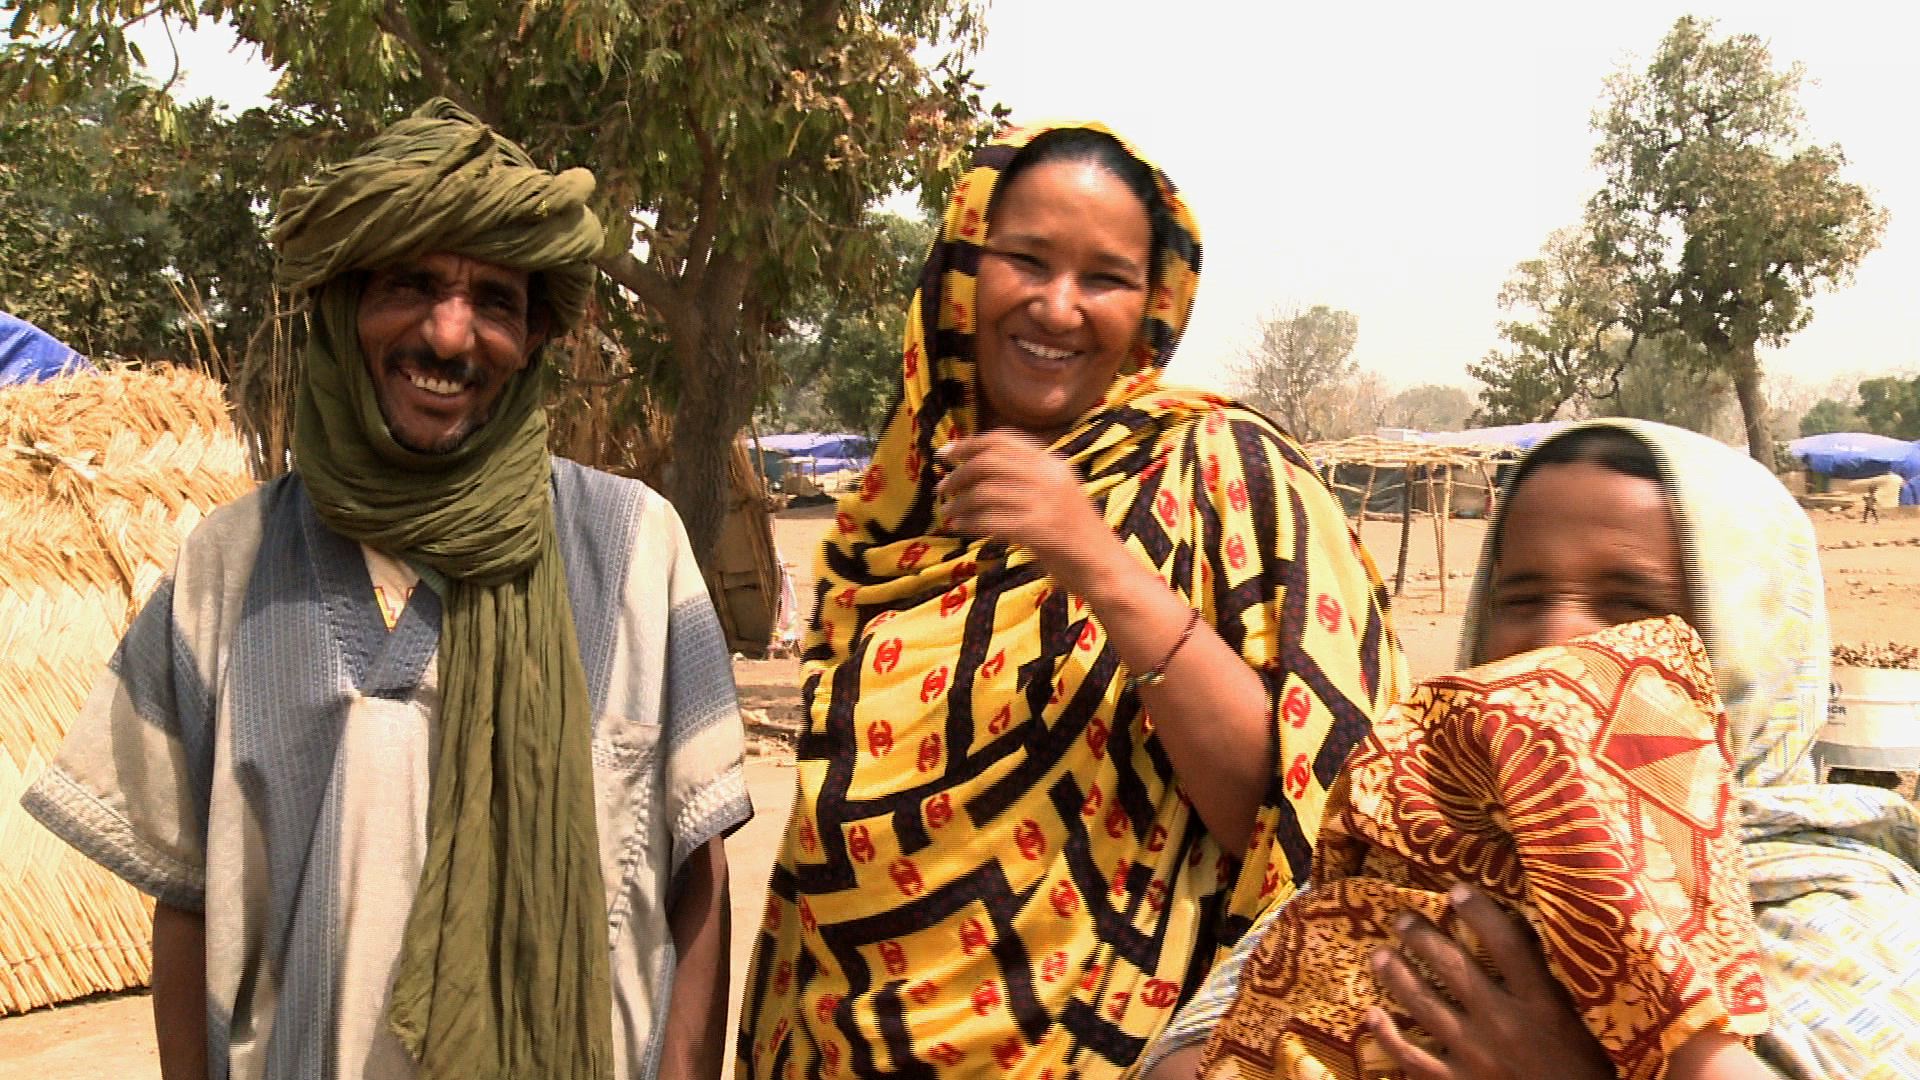 Caravane Touareg <br/> Nel 2012, centinaia di migliaia di civili tuareg fuggono dal Mali settentrionale, che sprofonda in una guerra. Attraverso l’epopea di Disco, un cantante Tuareg impegnato per la pace, che abbiamo seguito per dieci anni, scopriamo le sfide che devono affrontare i Tuareg e le cause della guerra in Mali [Belgio, 2016]